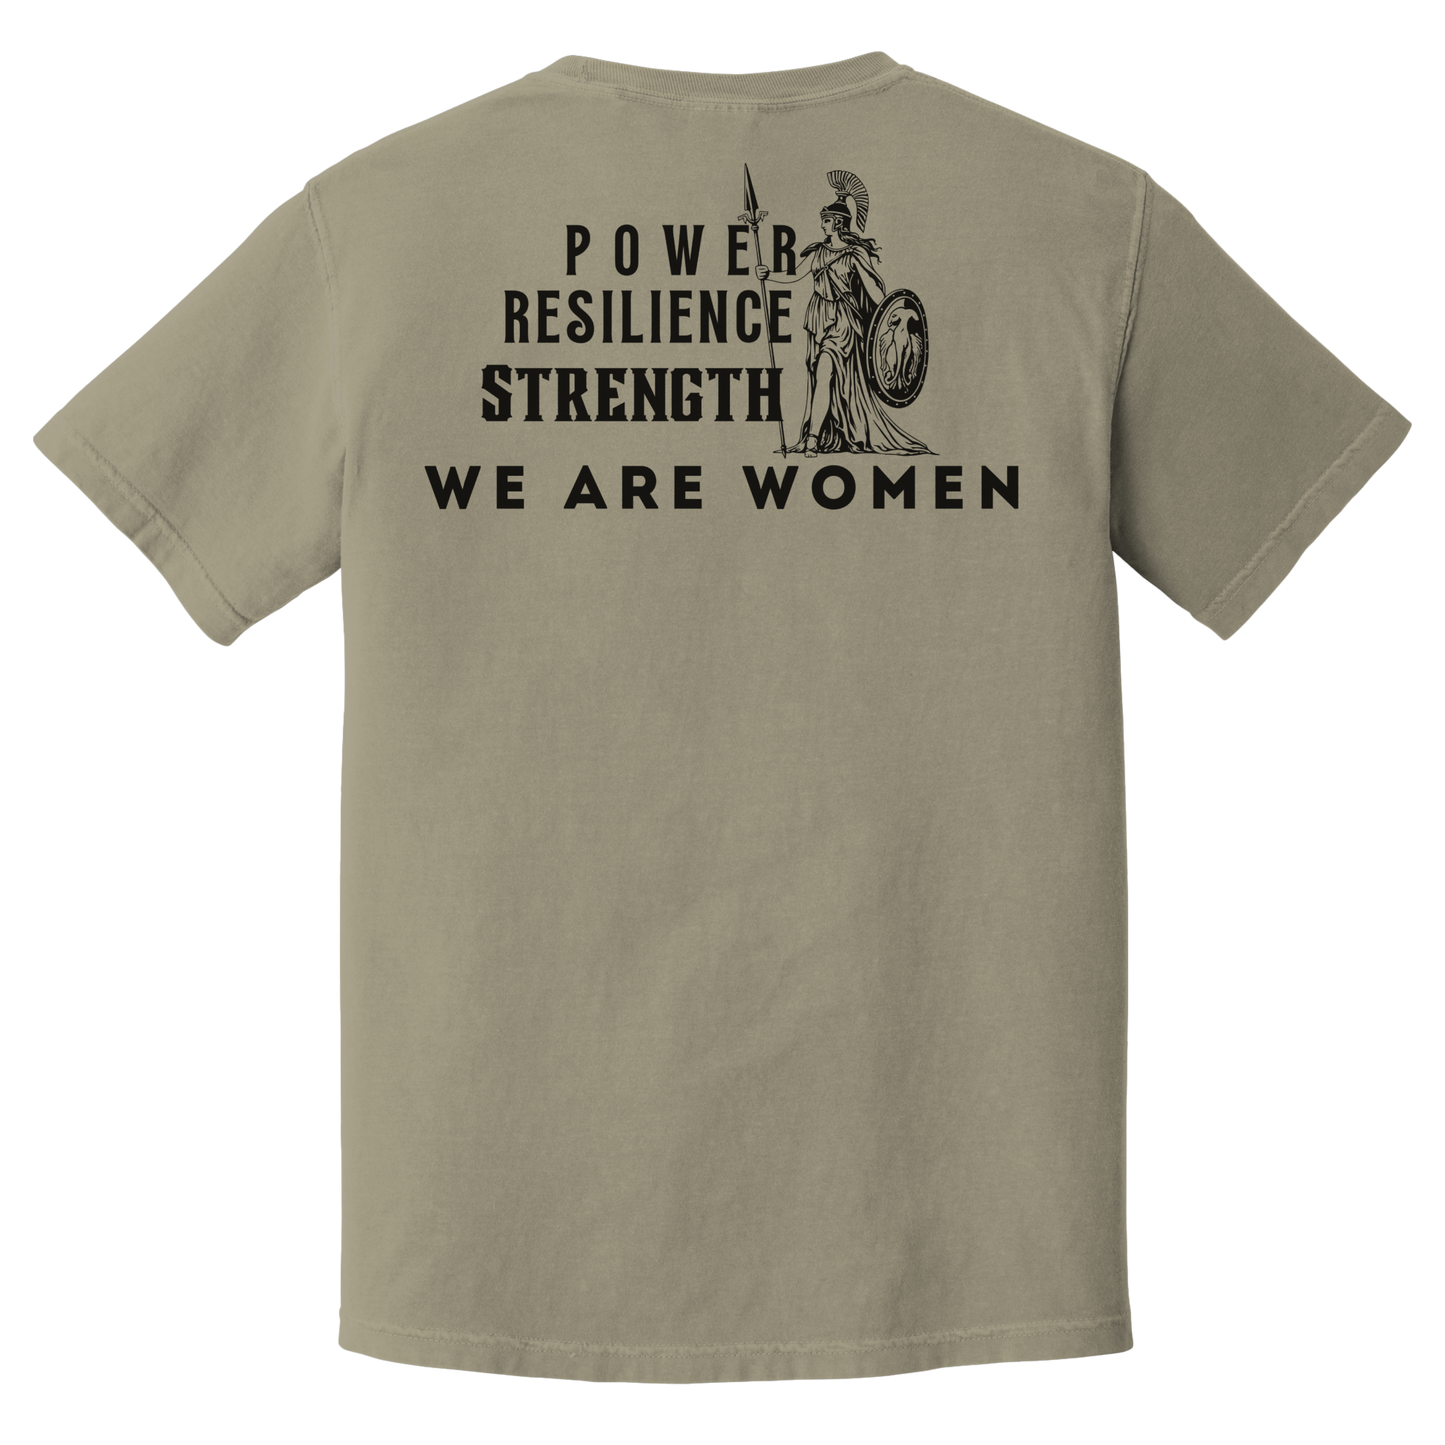 We Are Women T-Shirt